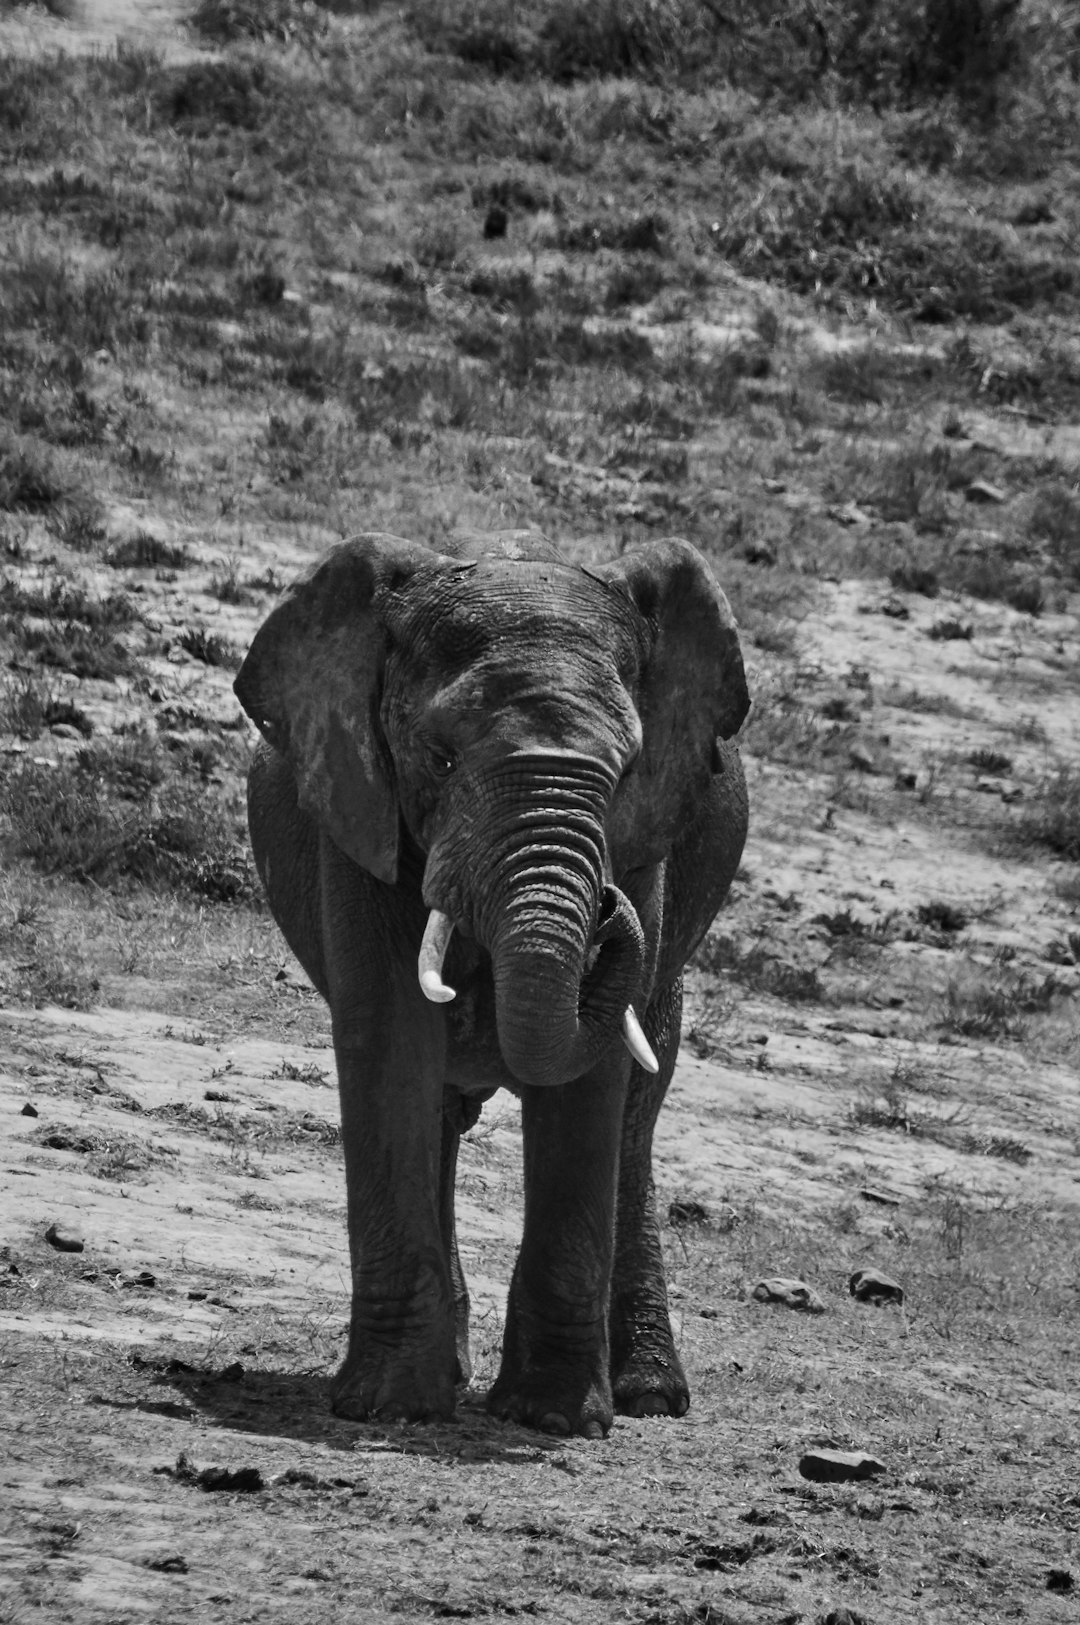 grayscale photo of elephant walking on field